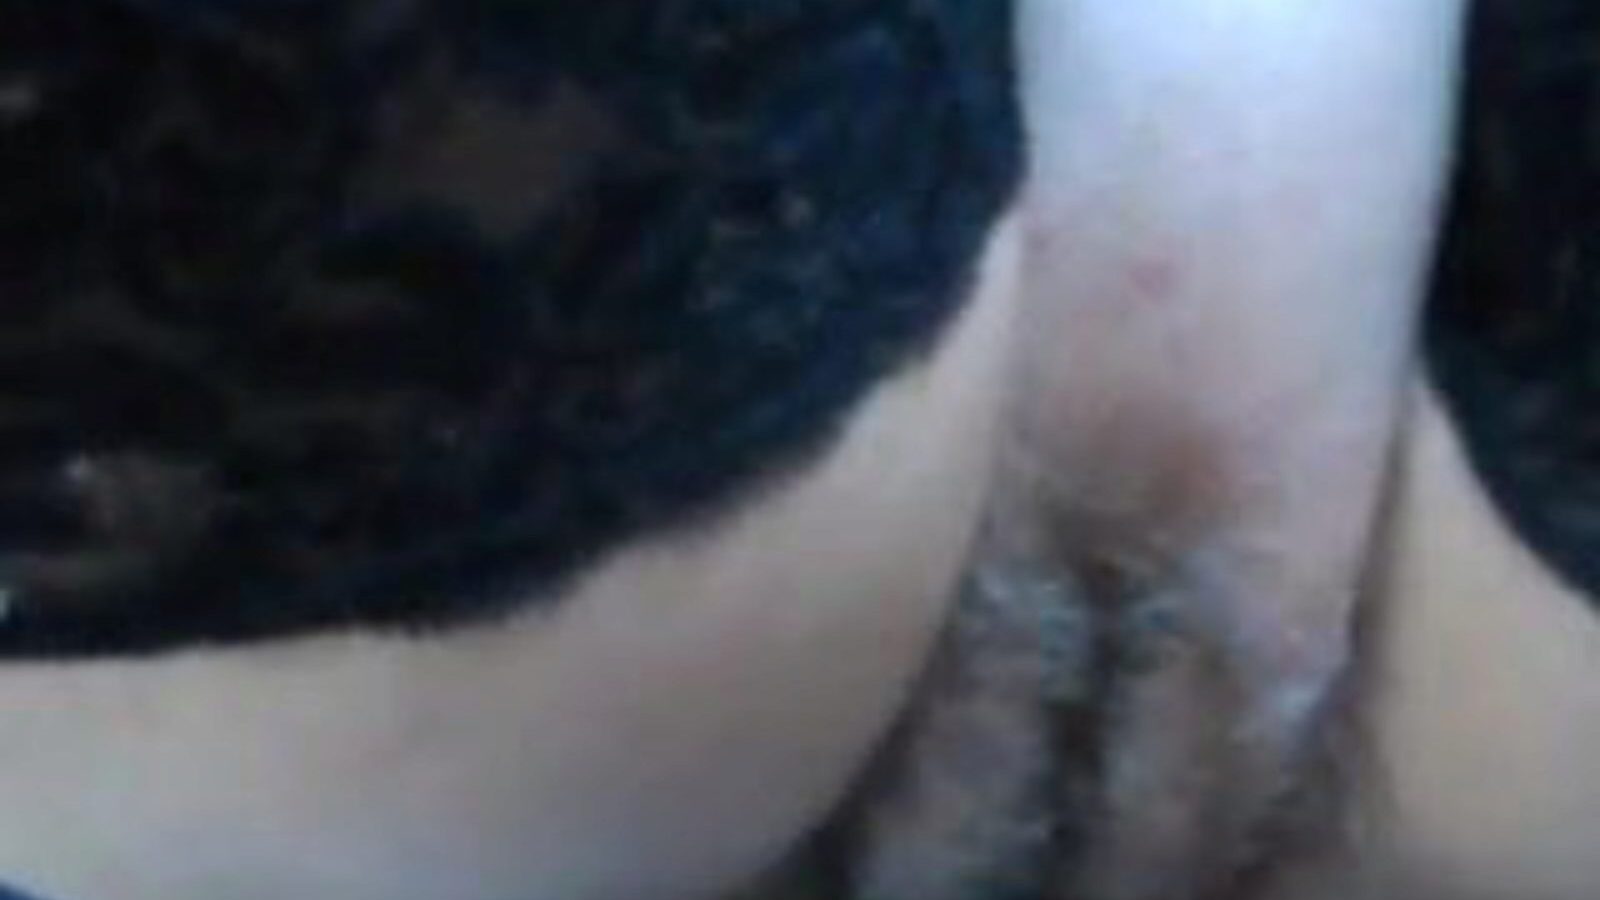 foder e mostrar: vídeo pornô de cona foda peludo b9 - xhamster assistir vídeo de sexo foda e mostrar tubo para todos no xhamster, com a coleção autorizada de cona foda foda grátis e sequências de episódios pornôs de xxx & foda